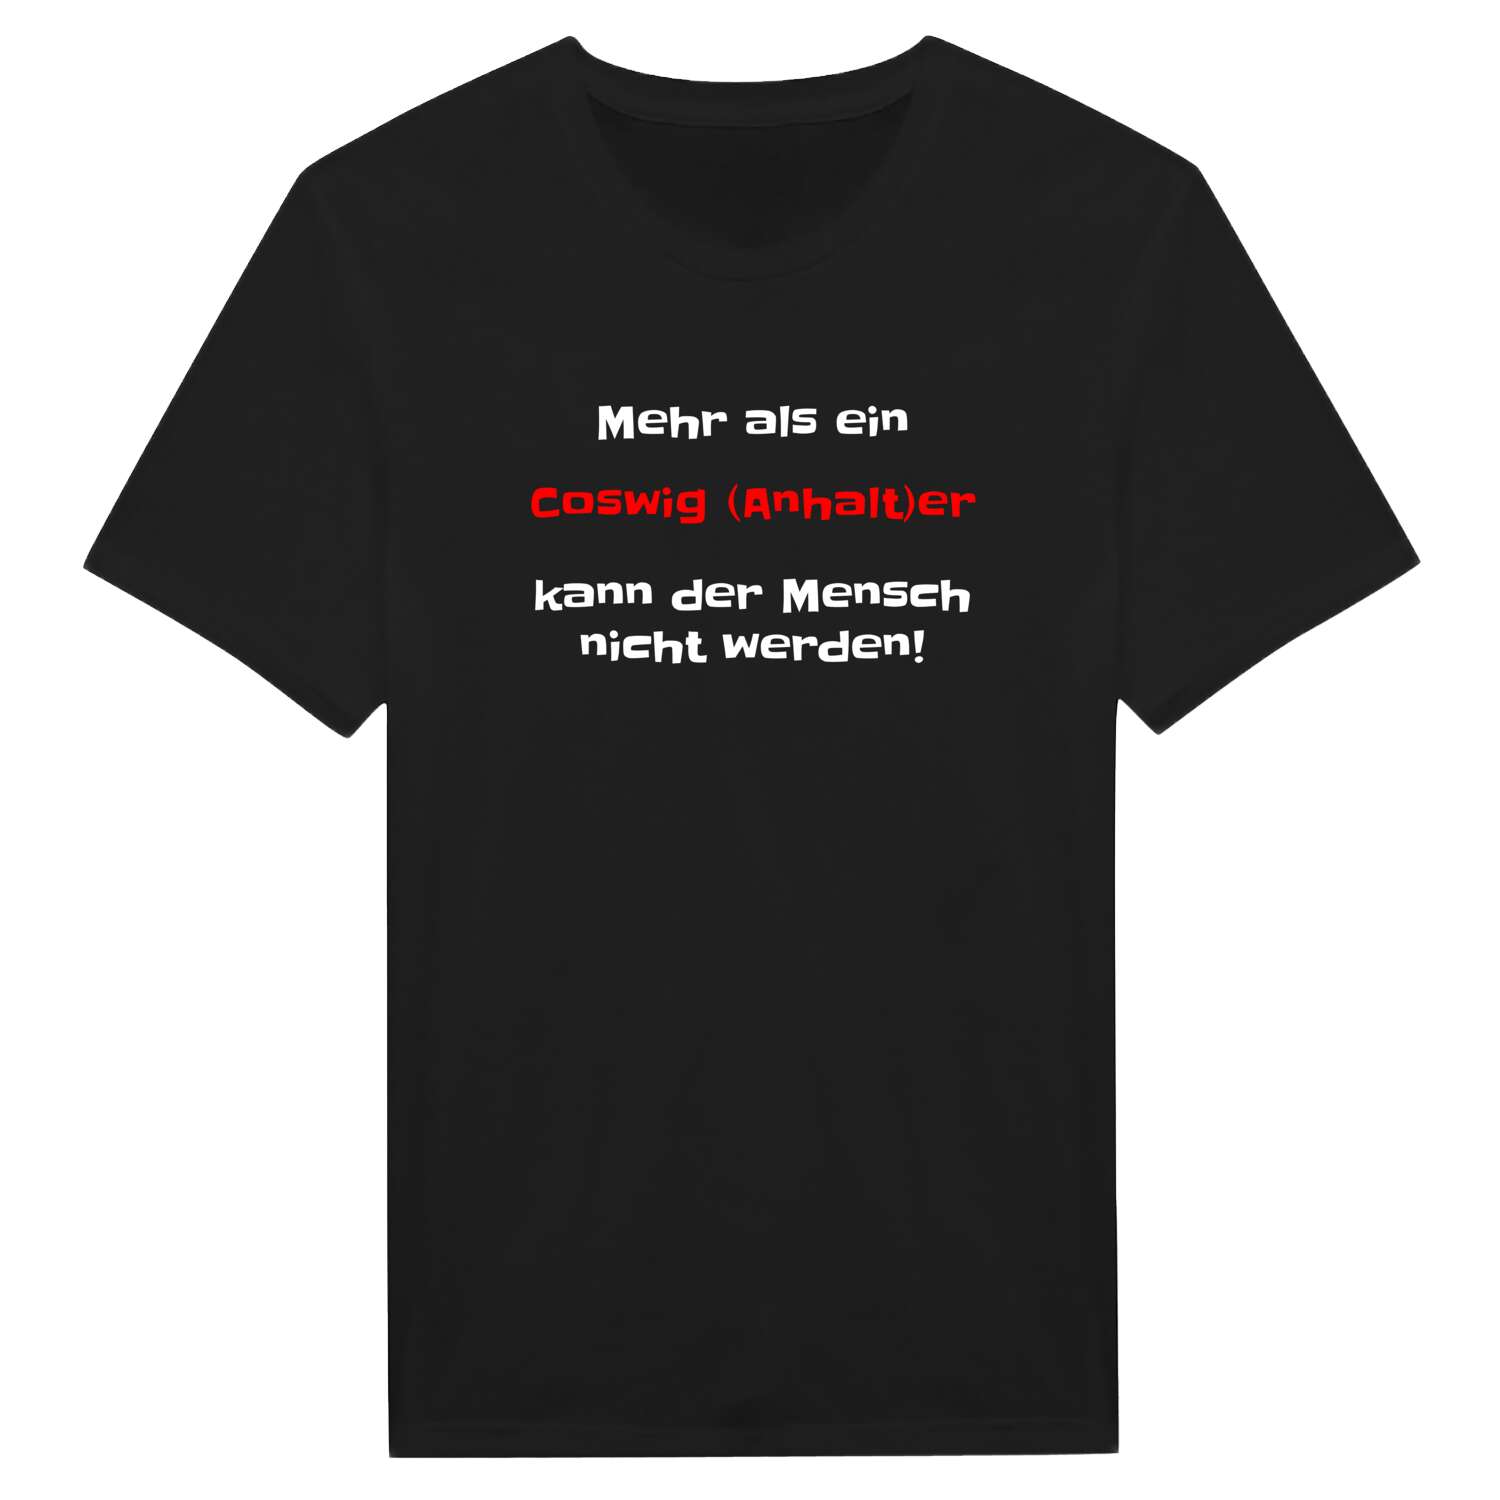 Coswig (Anhalt) T-Shirt »Mehr als ein«